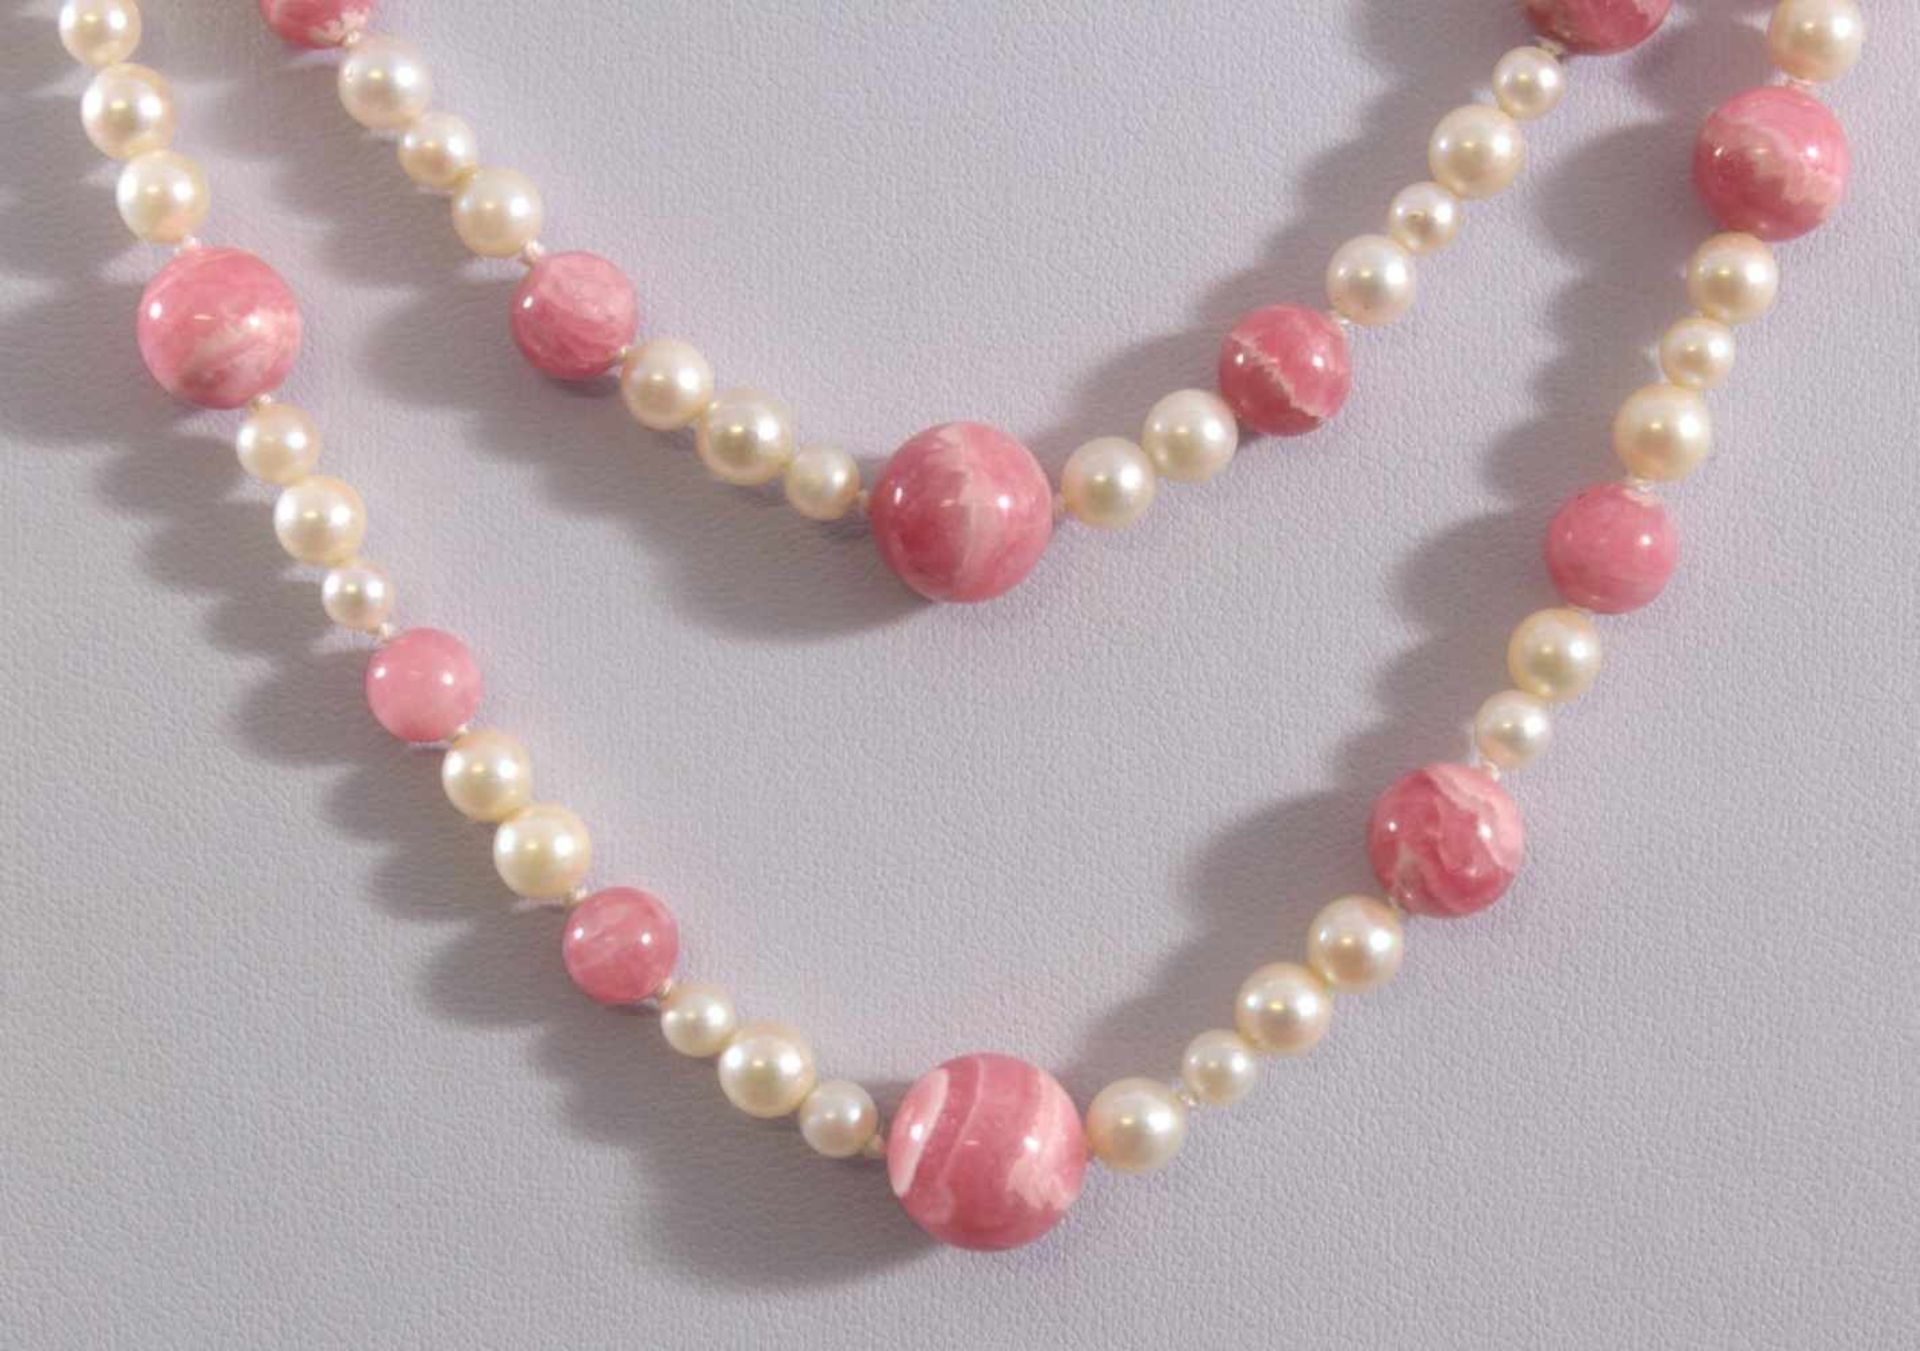 Halskette aus Perlen- und Rosenquarzkugeln mit WeißgoldschließeKugeln einzeln geknotet, - Image 2 of 3